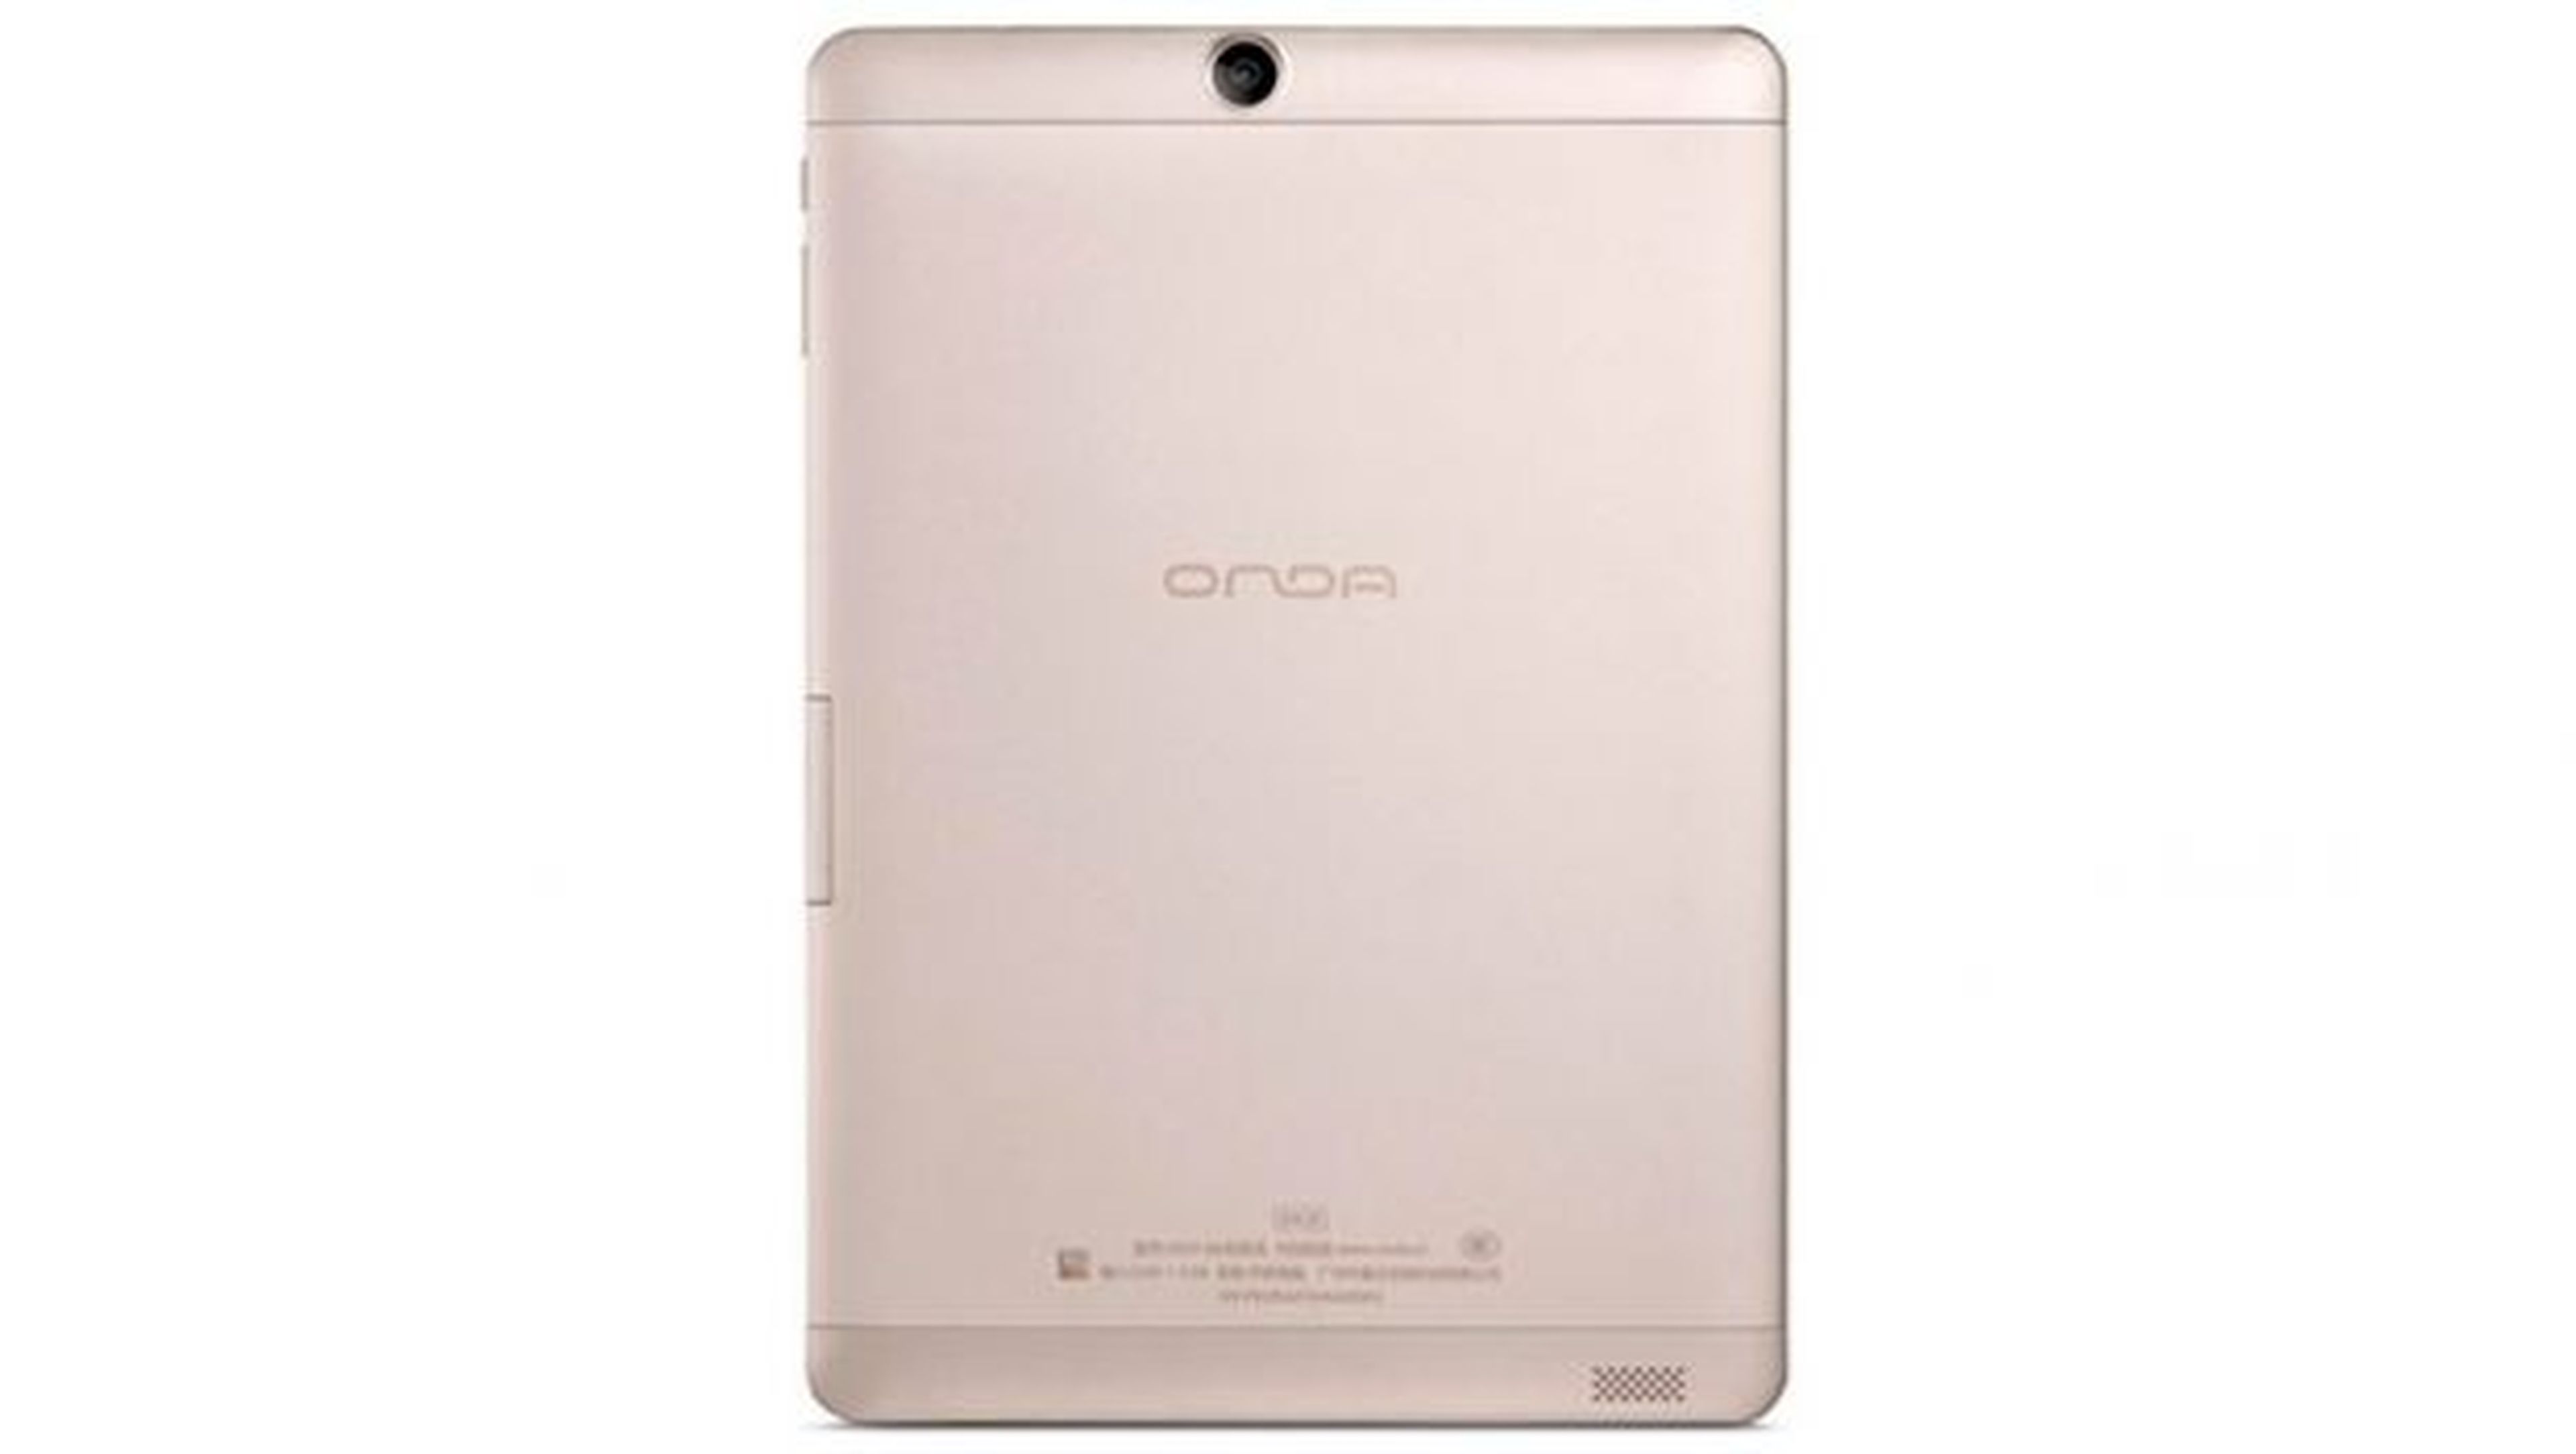 La Onda V919 Air es una tablet china con arranque dual Android y Windows 10